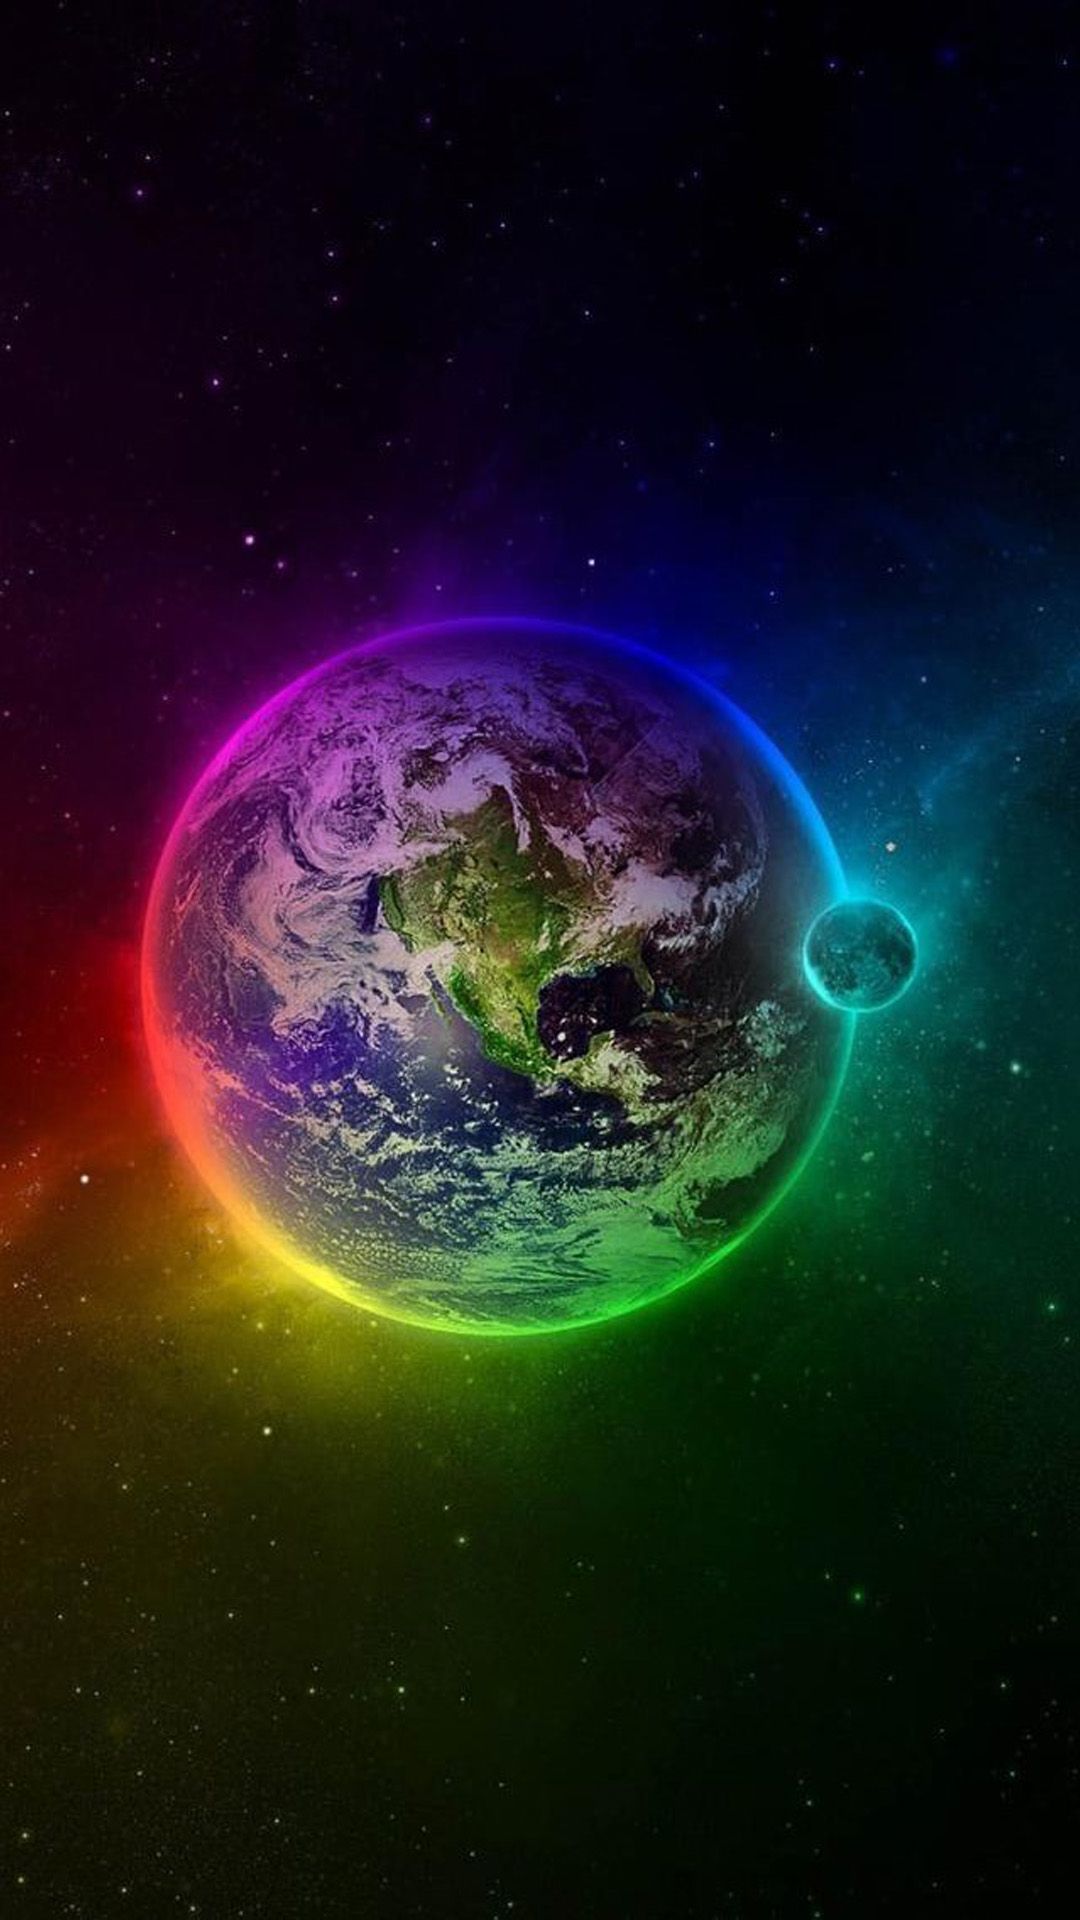 تصویر بسیار جذاب کره زمین در کهکشان با تم هفت رنگ